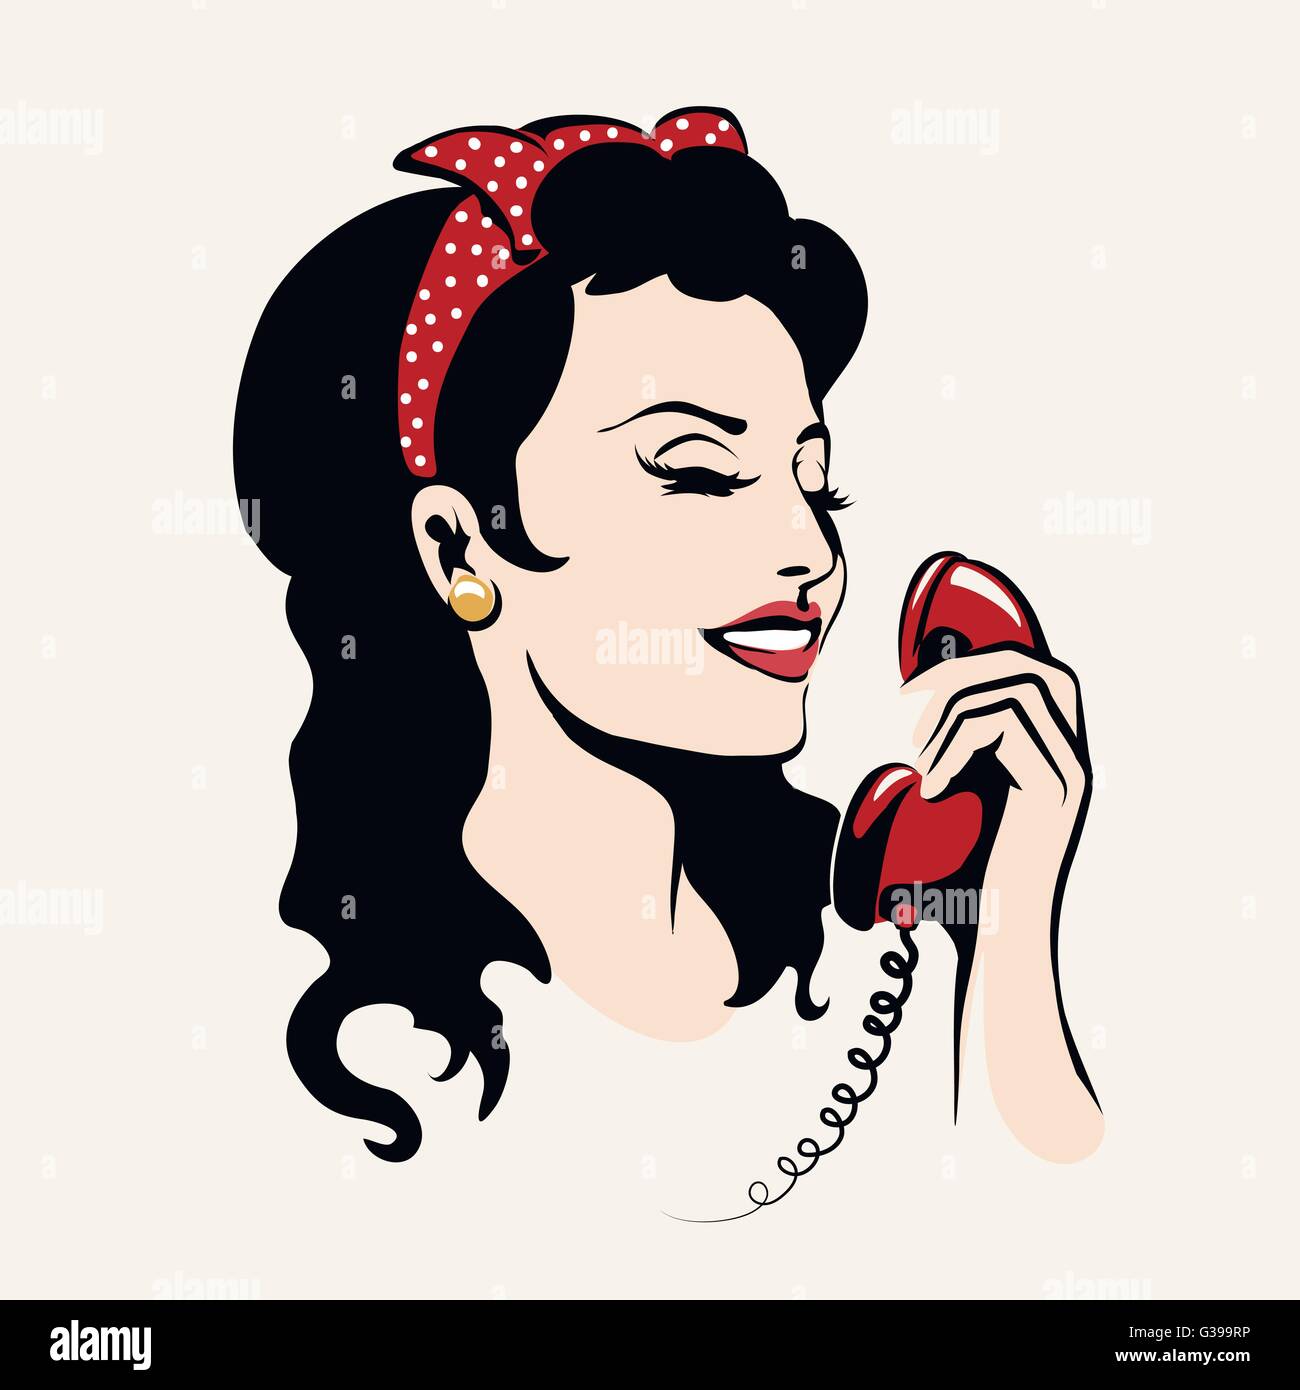 Hübsche Frau, lachen und reden am Telefon, Pop-Art-Abbildung. Stock Vektor